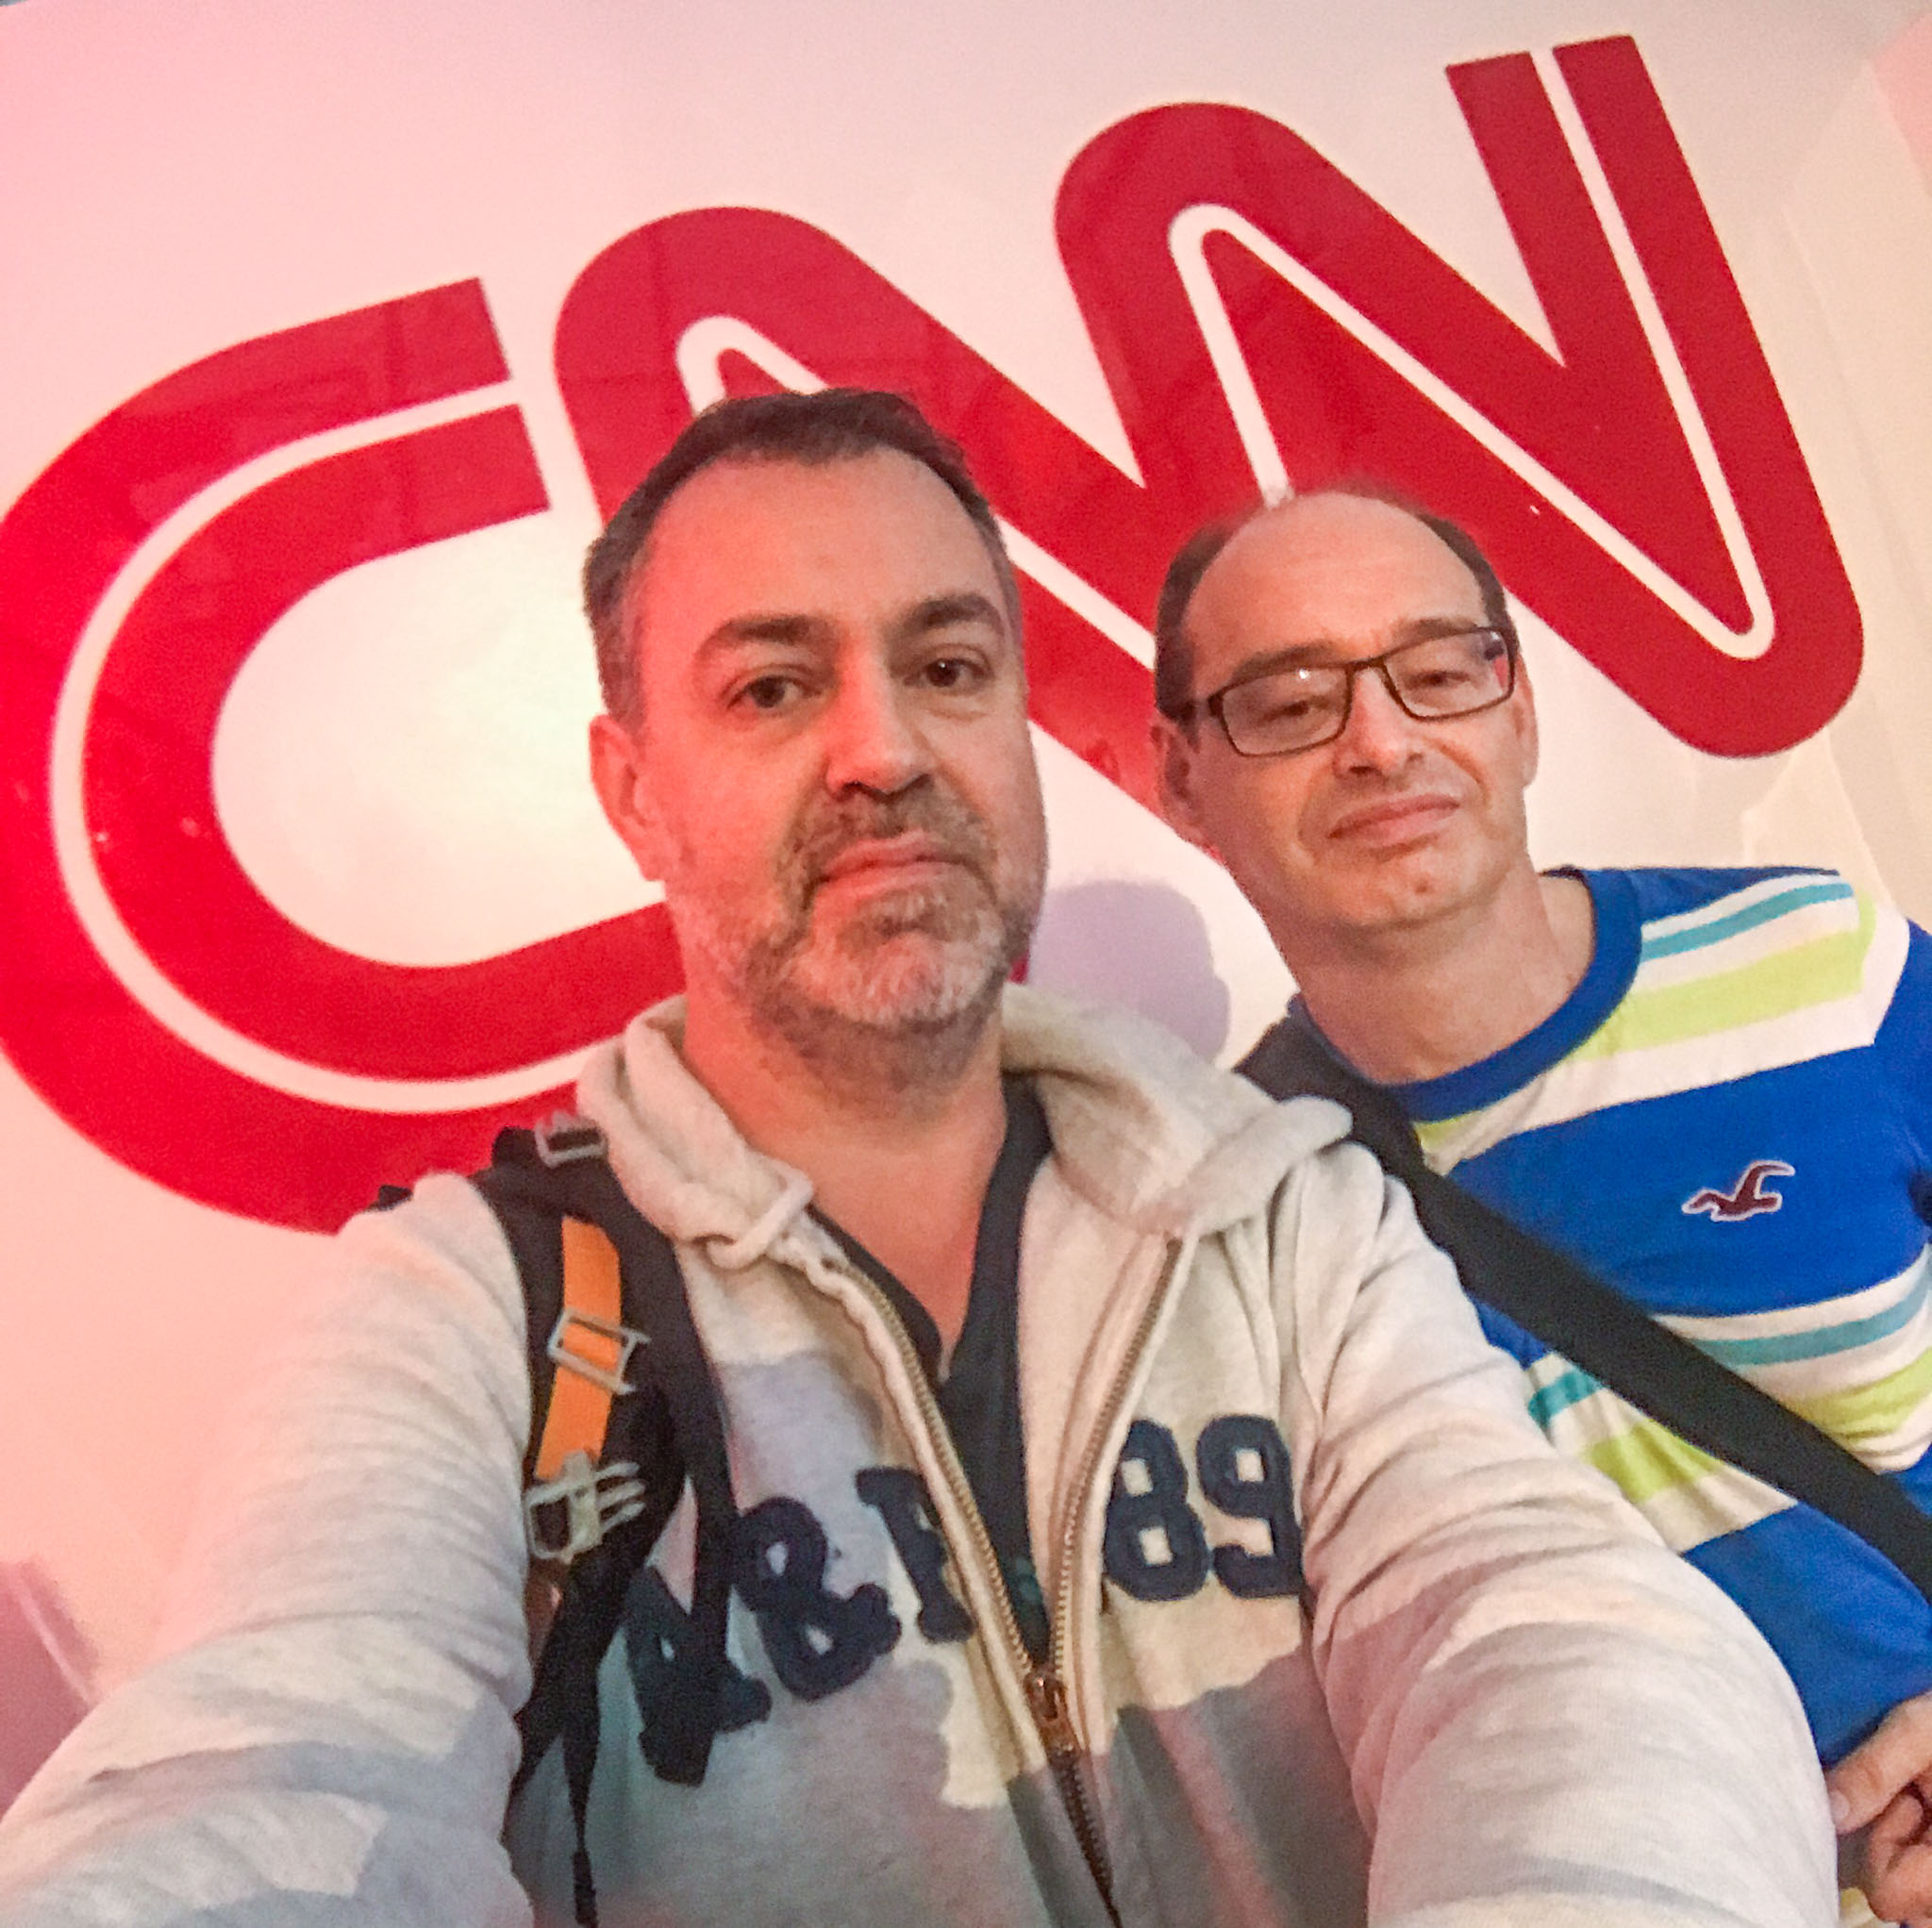 Selfie at the CNN Newsroom in Atlanta, GA